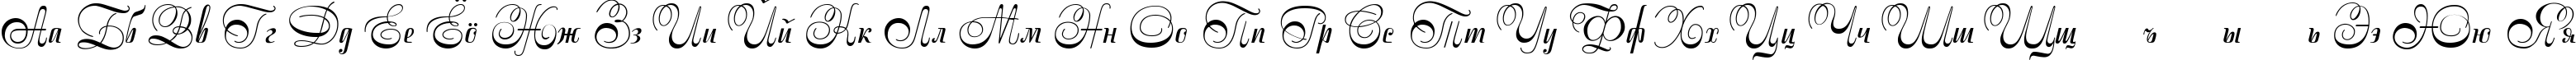 Пример написания русского алфавита шрифтом Stradivari script